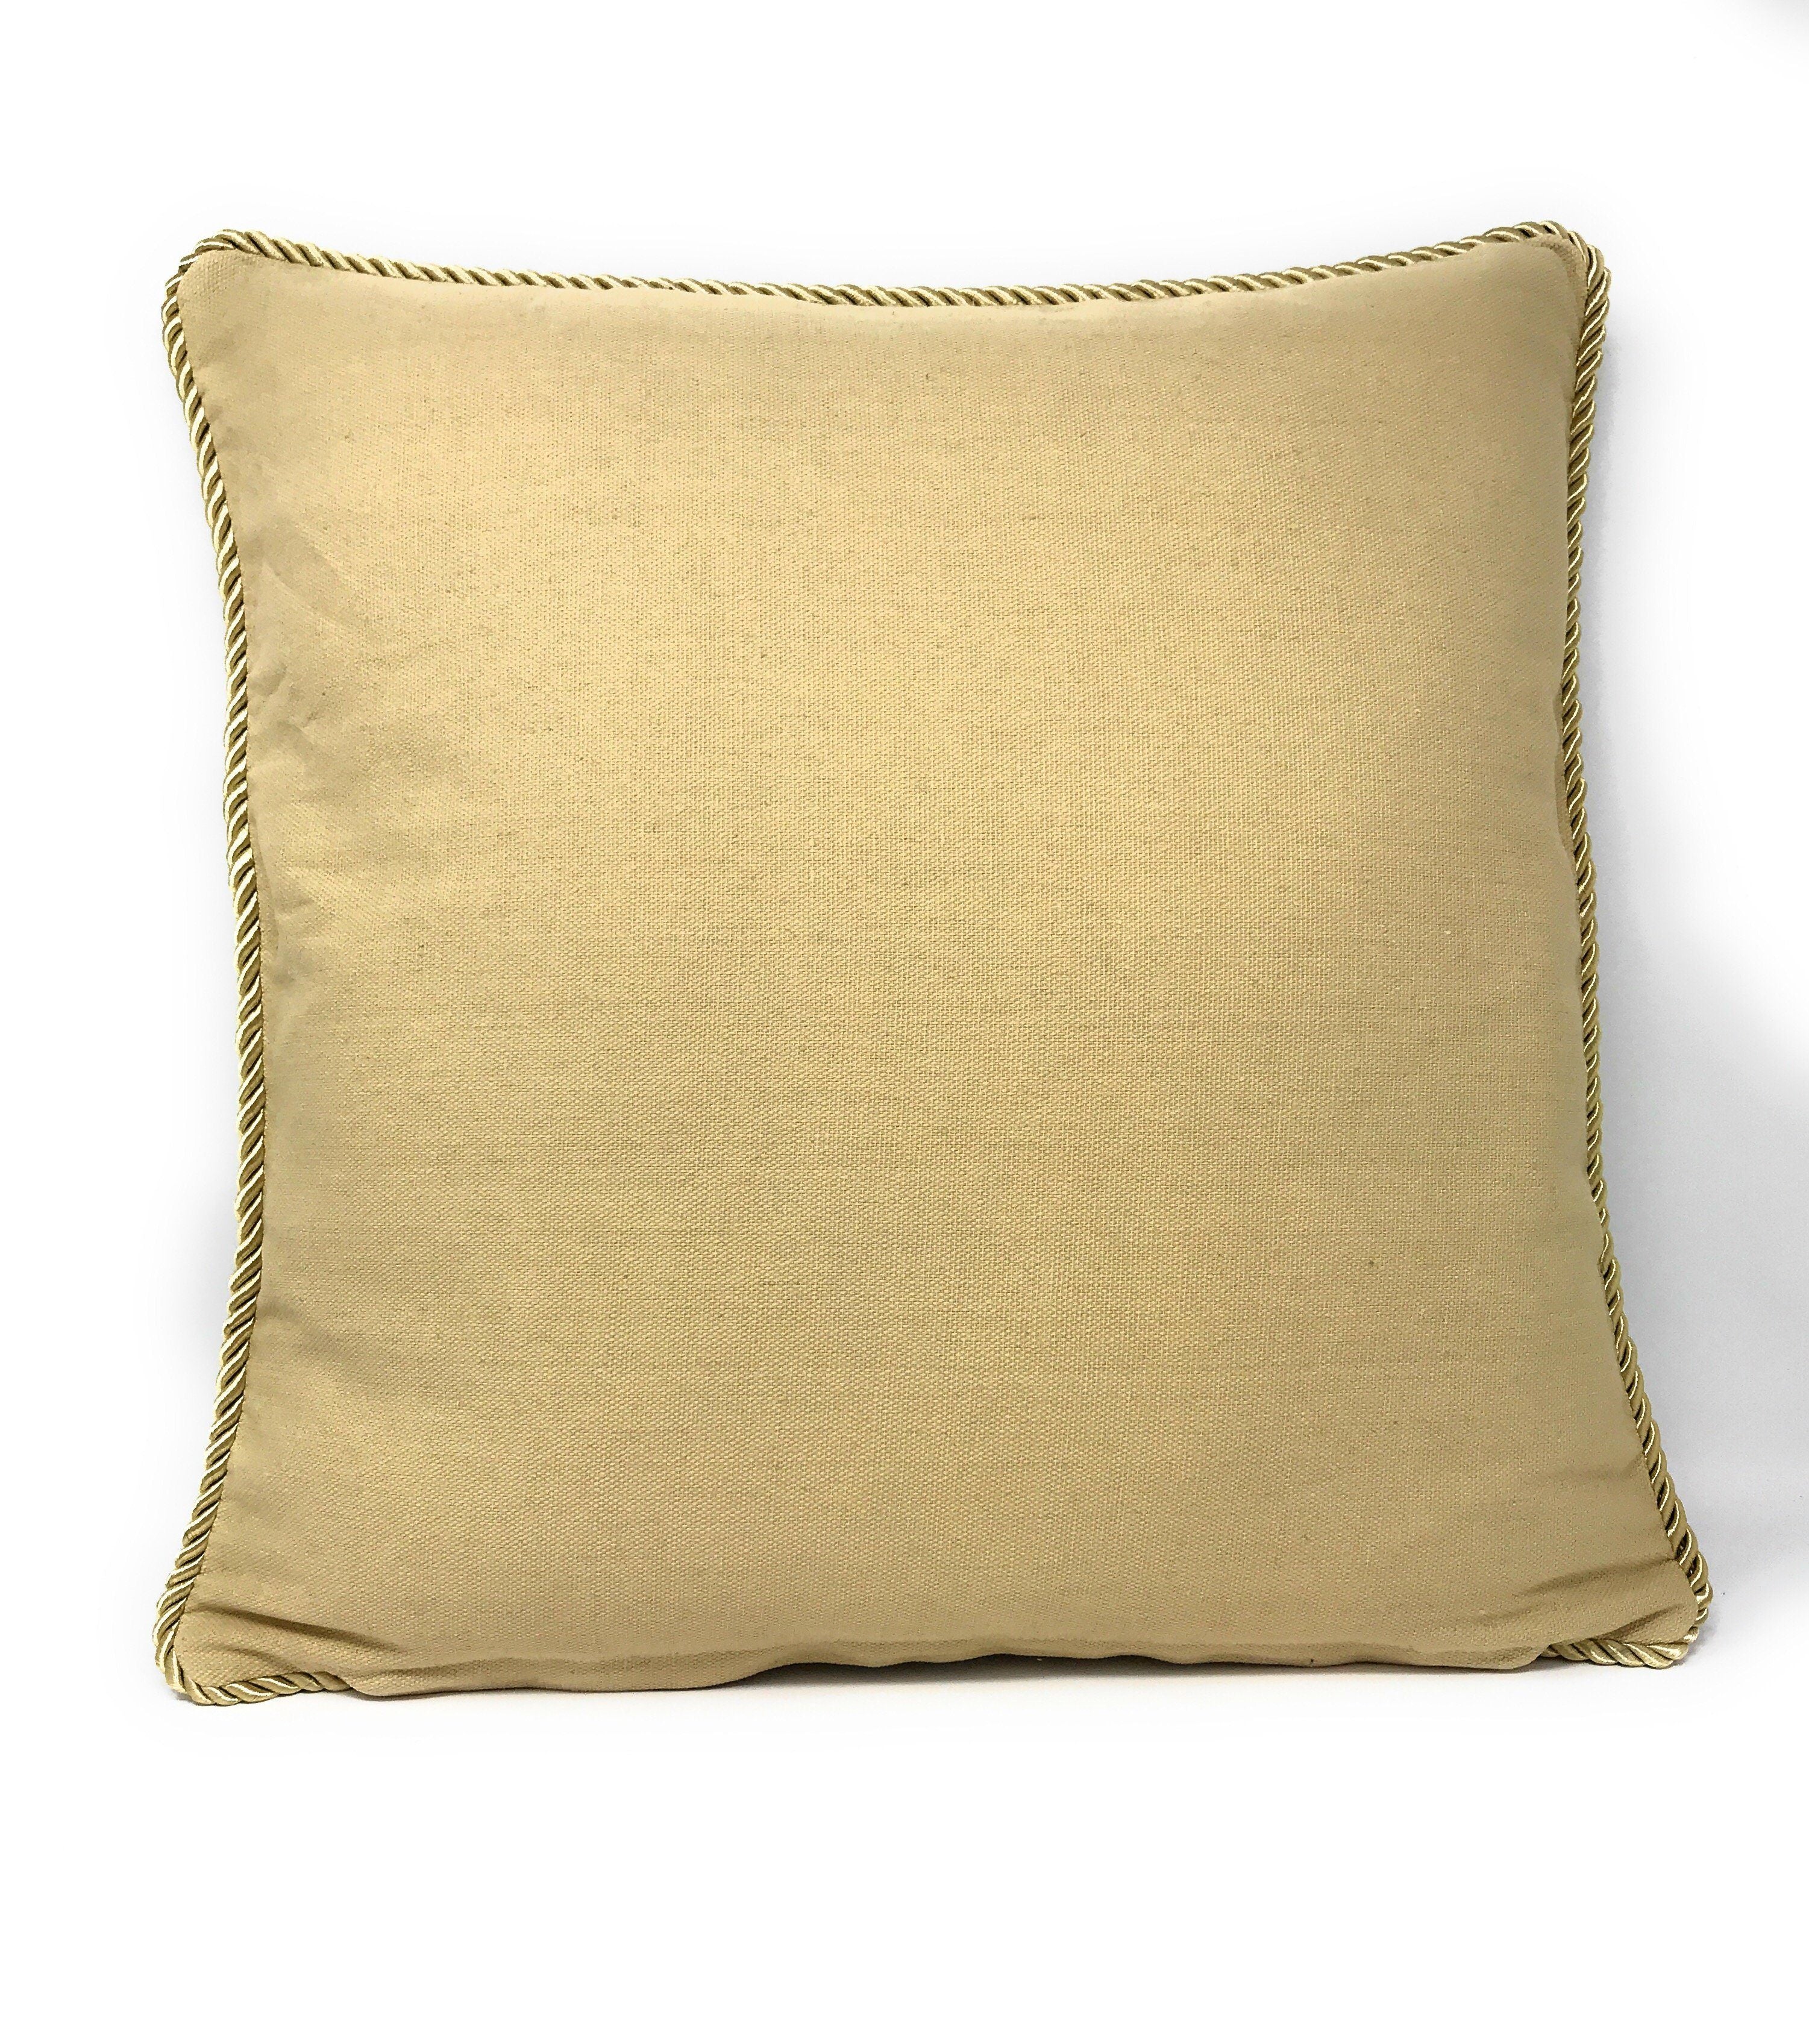 Tache 18 X 18 Inch Parisan Model Throw Pillow Cushion Cover (TA-CC-1362) - Tache Home Fashion